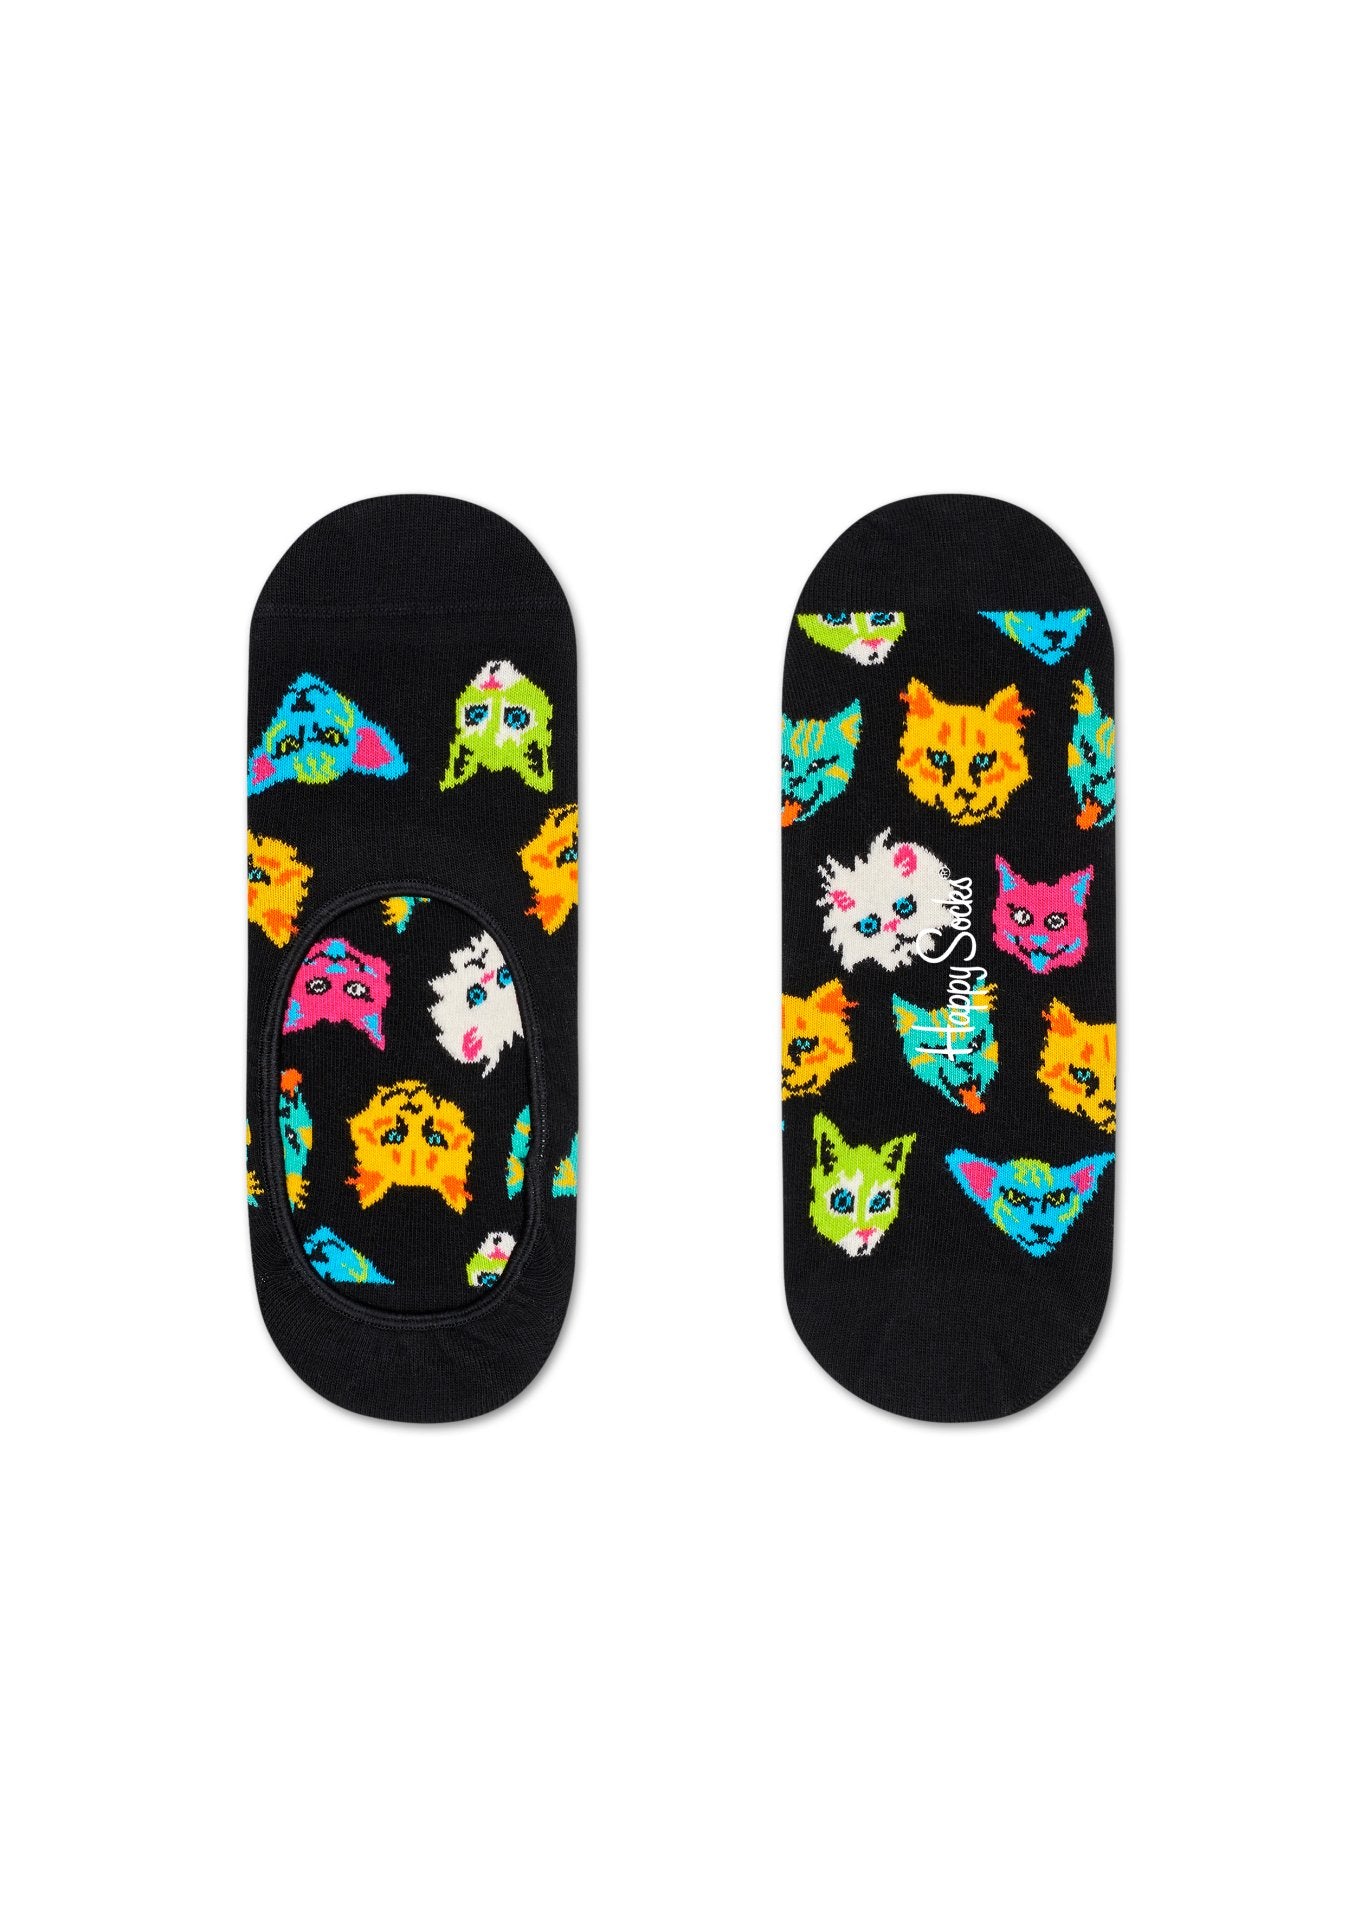 Nízké černé ponožky Happy Socks s kočkami, vzor Funny Cat